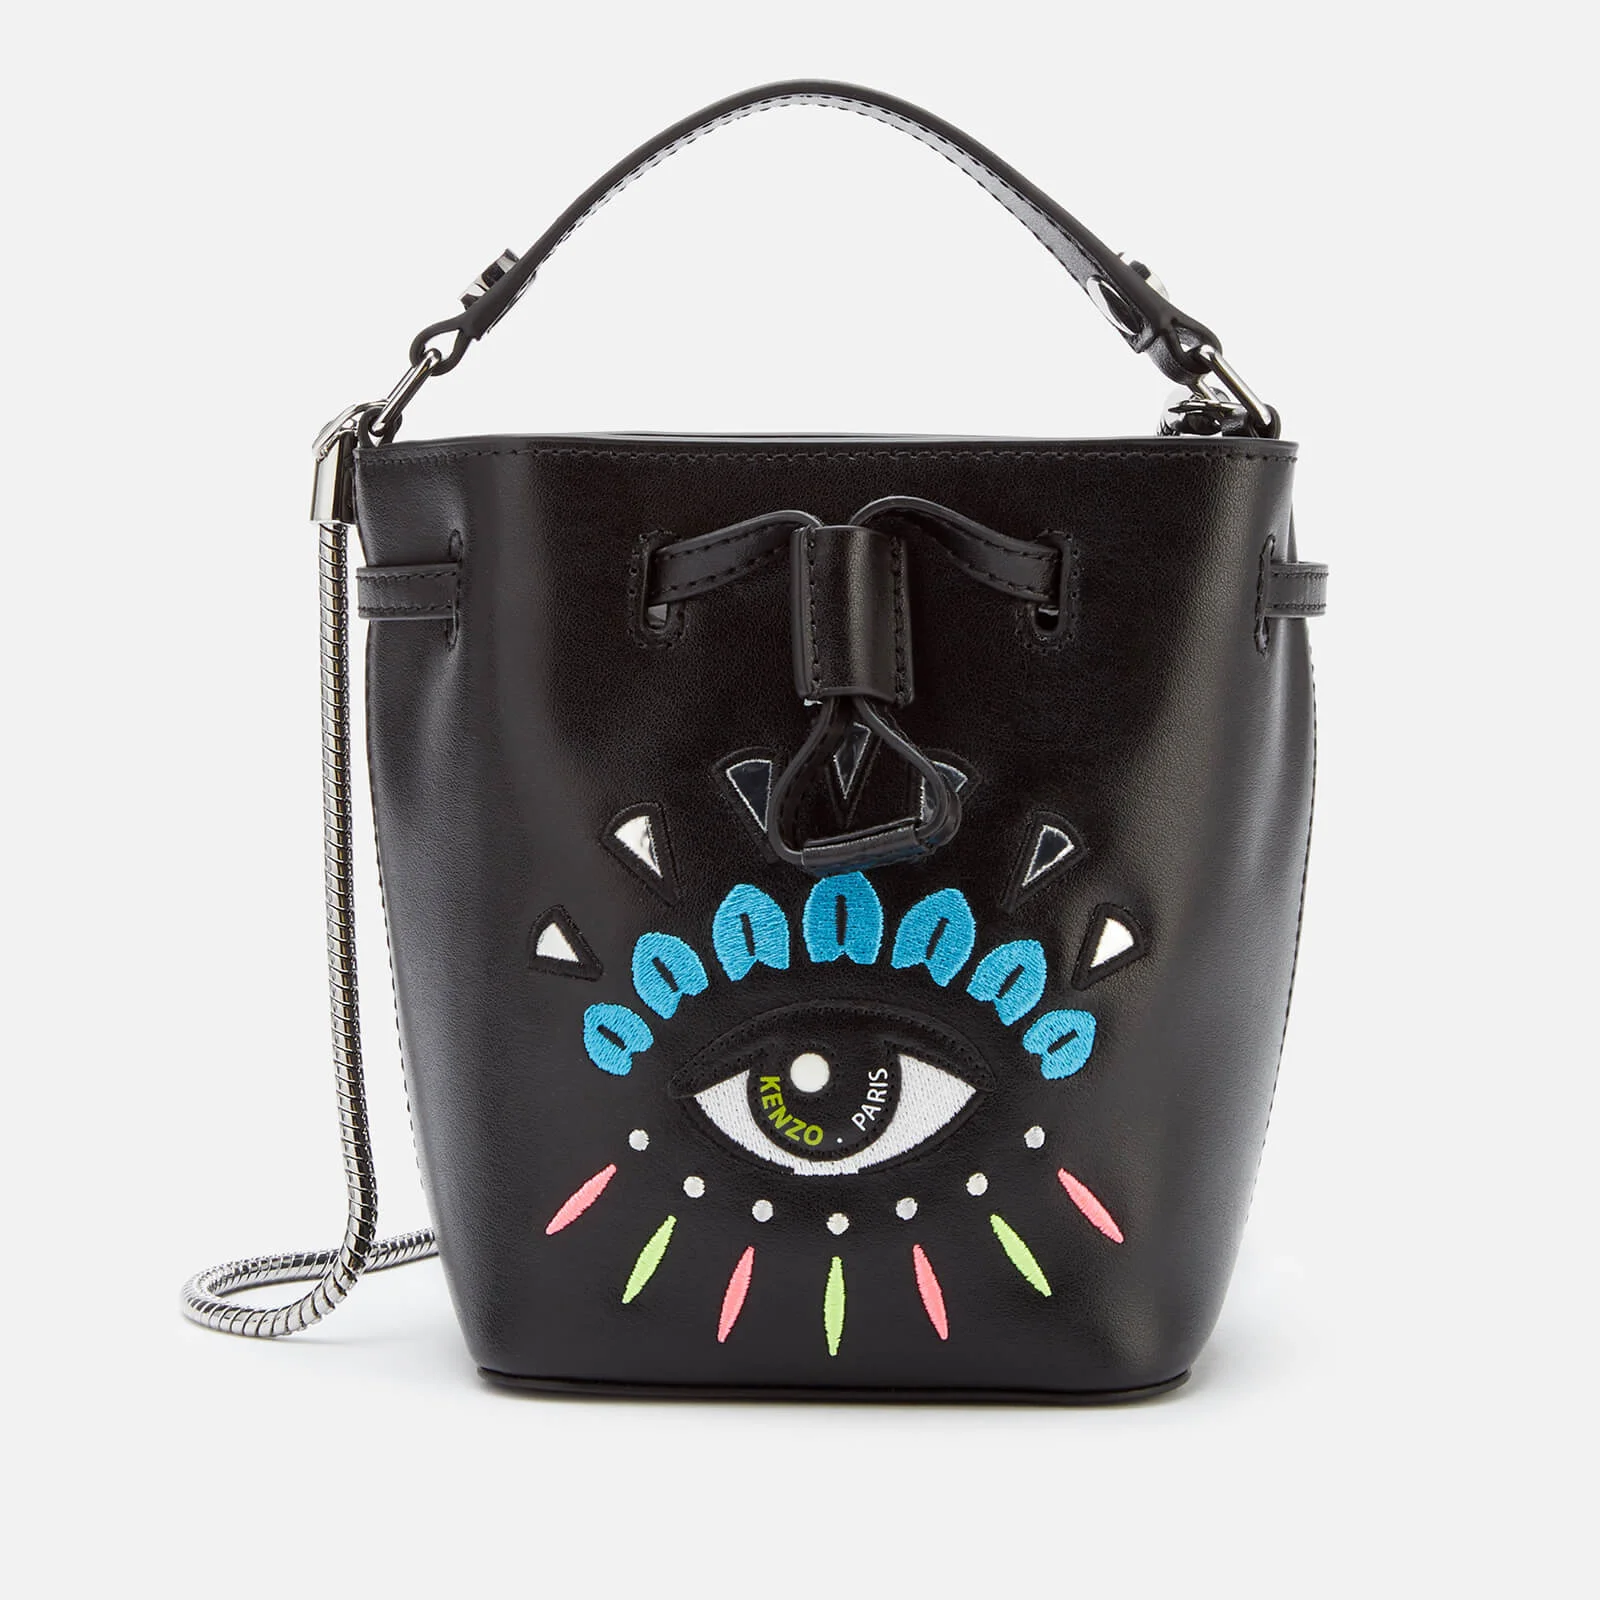 KENZO Women's Mini Bucket Bag - Black Image 1